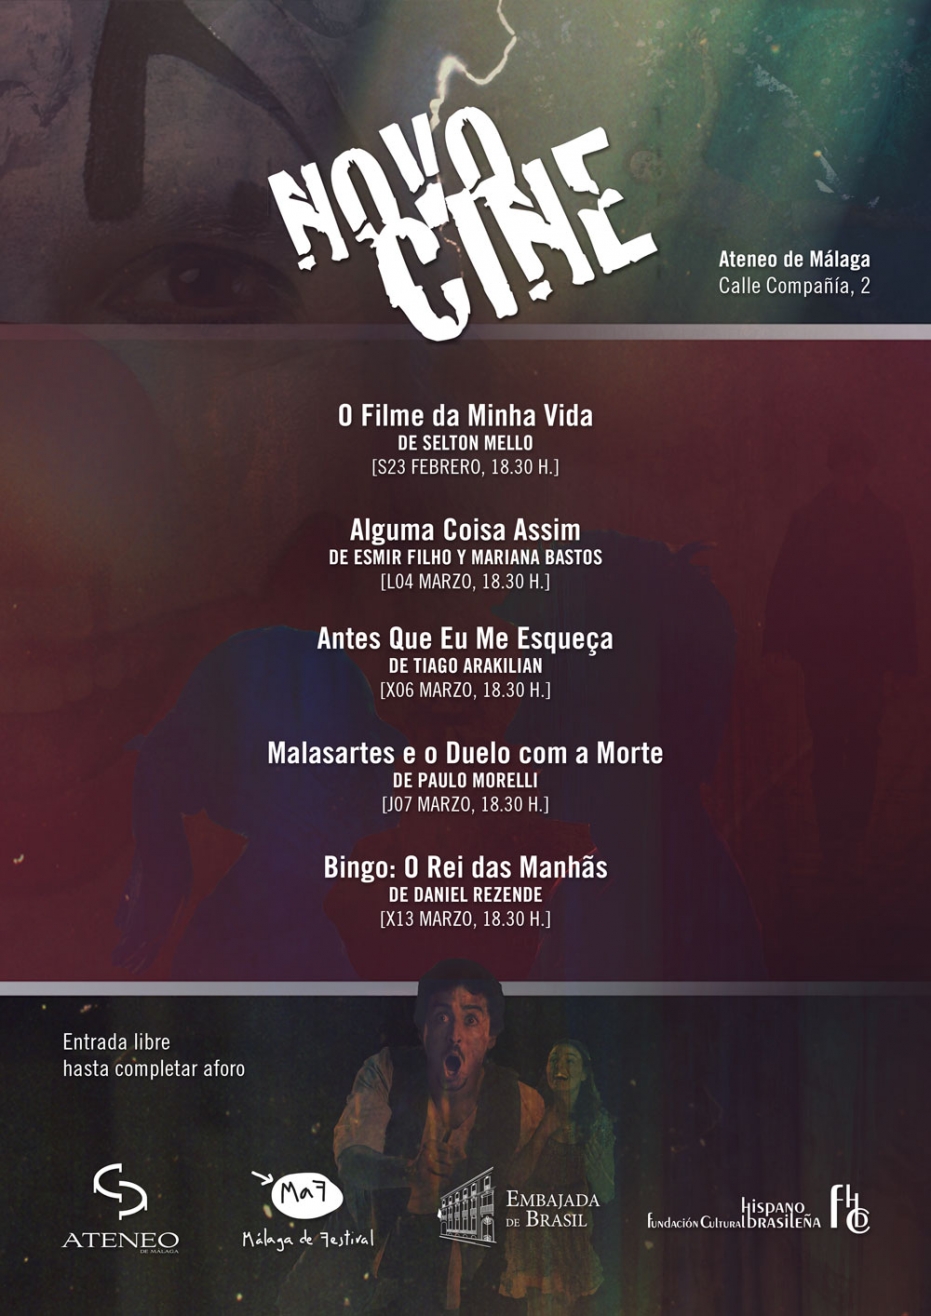 II Ciclo de Cine Novocine: proyección de 'Antes Que Eu Me Esqueça', de Tiago Arakilian. En colaboración con la Embajada de Brasil y la Fundación Cultural Hispano Brasileña